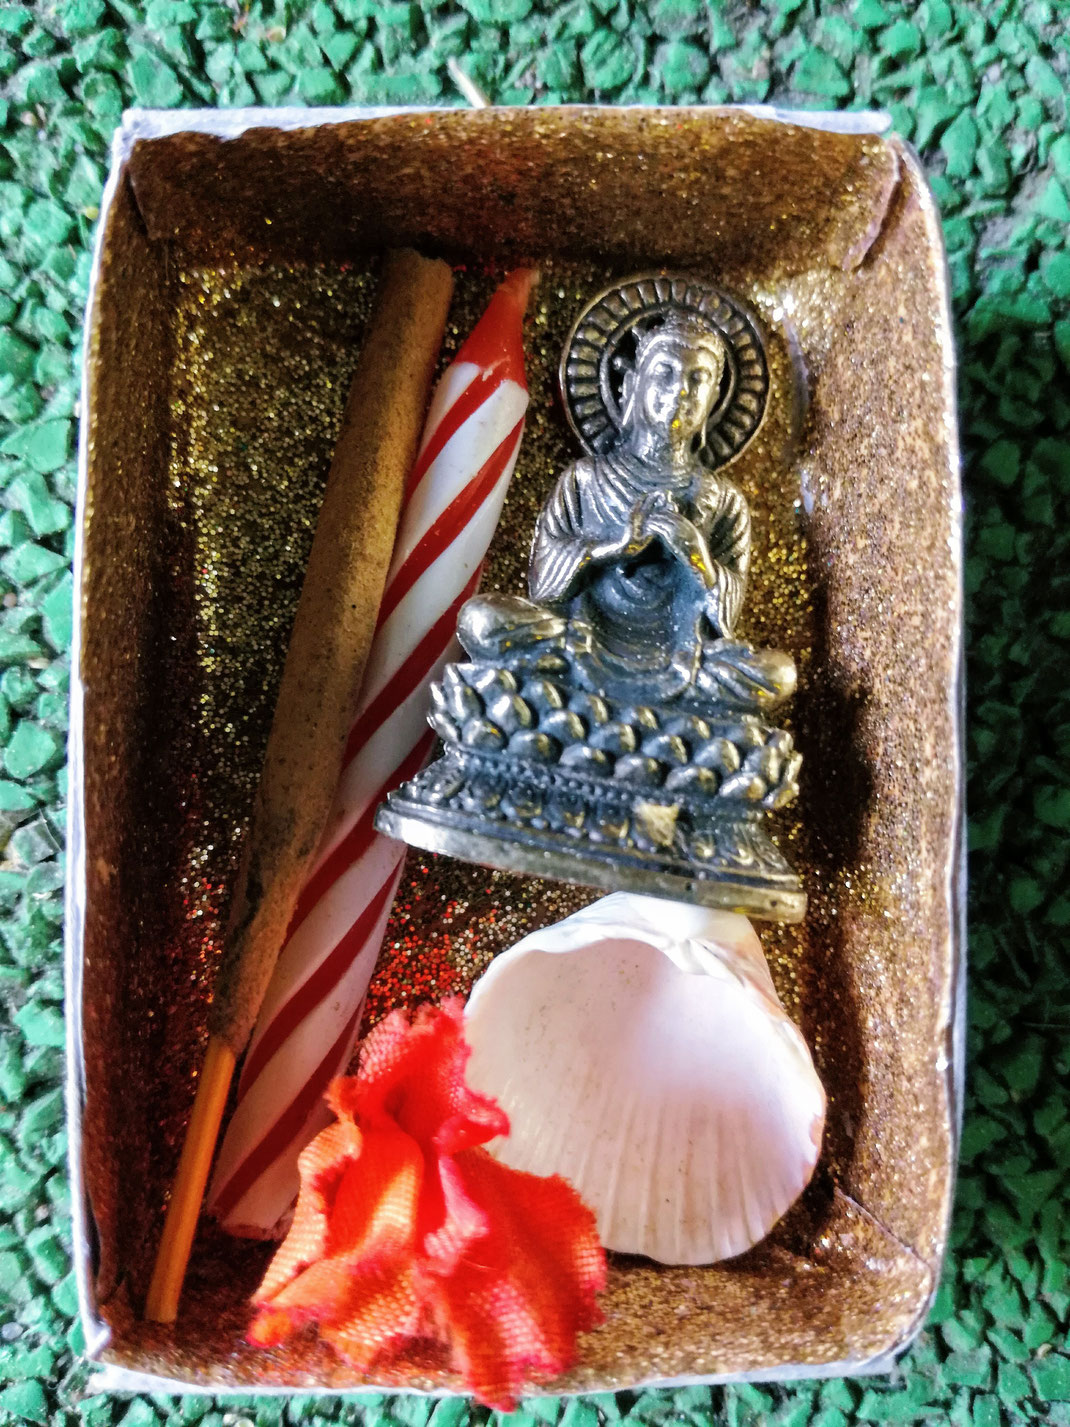 Verschenk’ einen Glücksmoment, Hosentaschen-Altar von elephanten, Hosentaschen-Altar in einer Streichholzschachtel, Altar für unterwegs, Buddha Nature